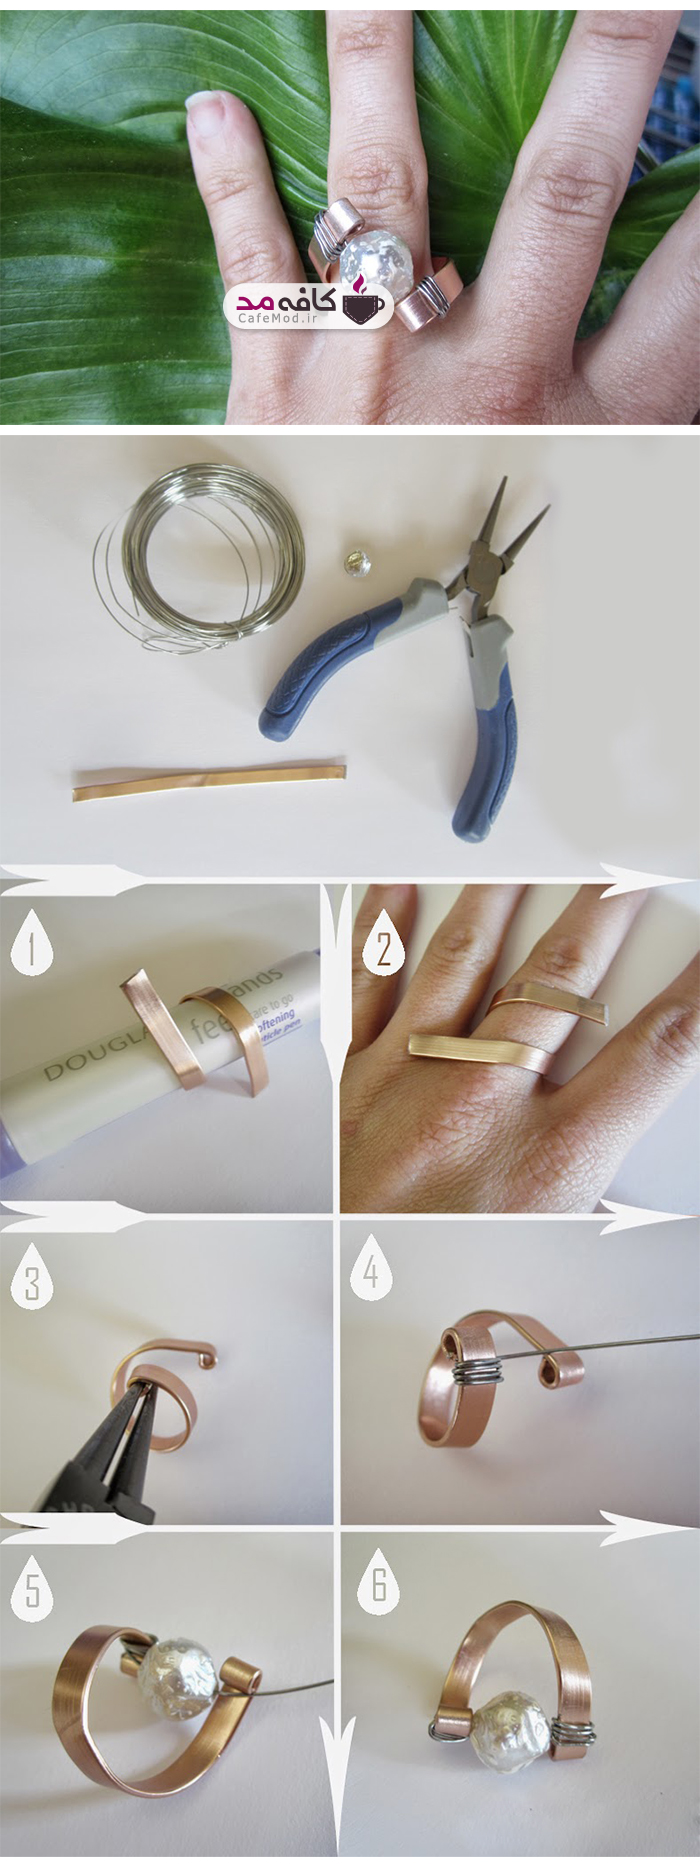 آموزش تصویری ساخت انگشتر سیمی